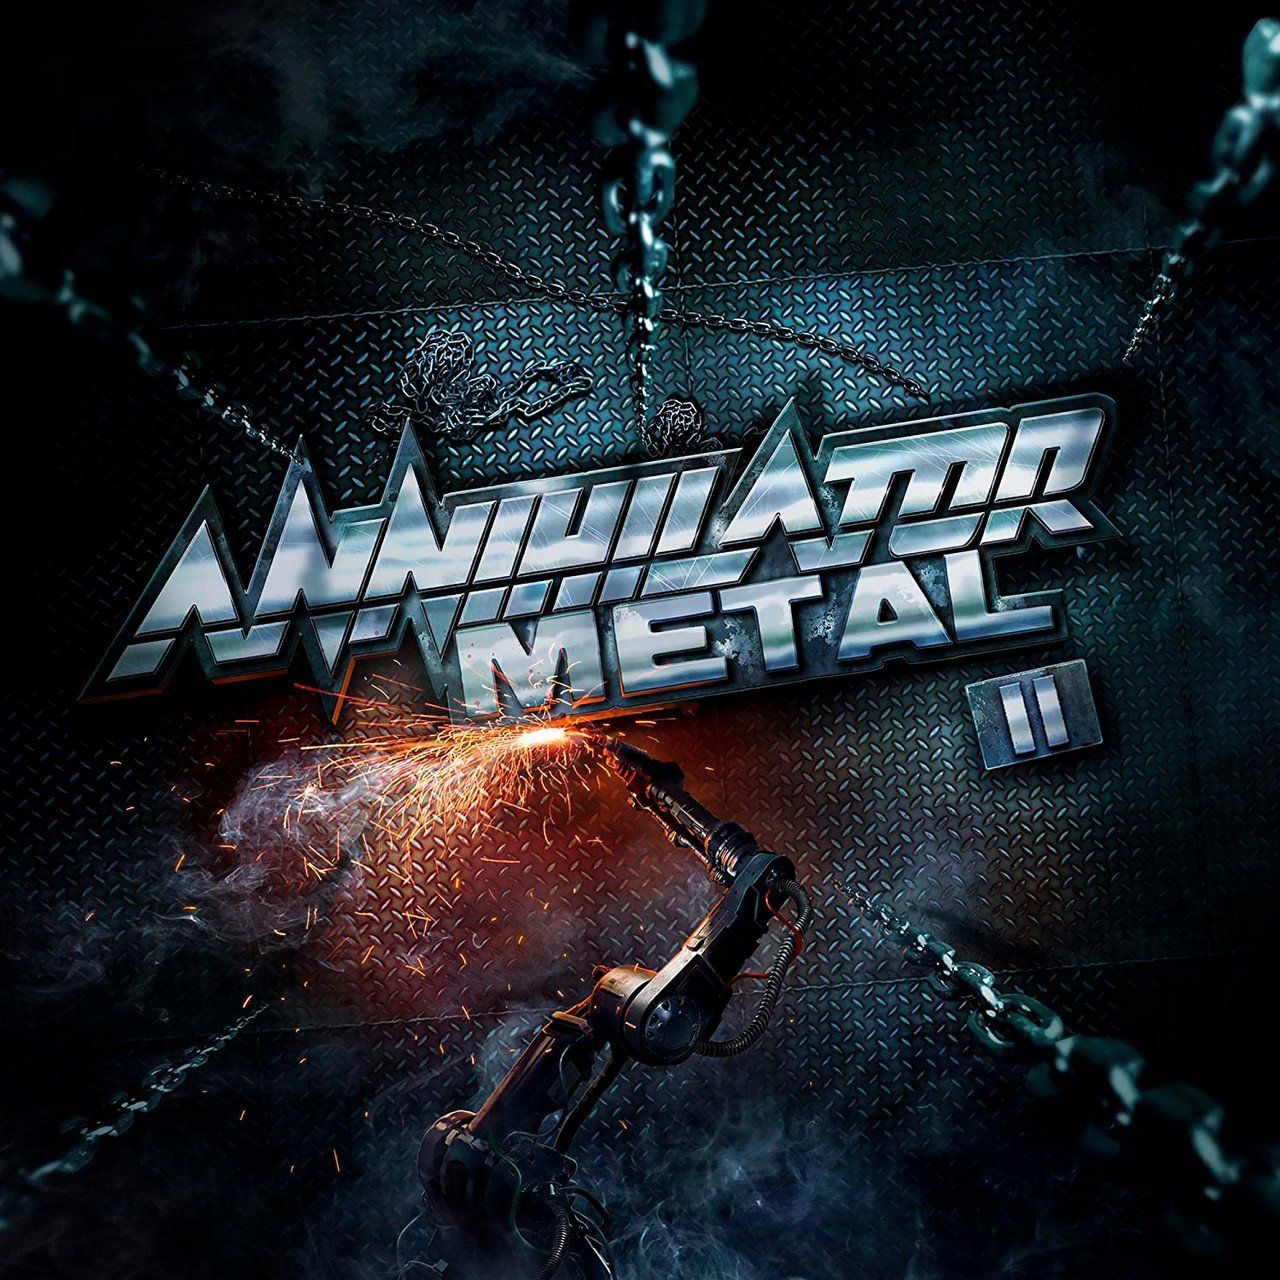 Annihilator – Metal II (CD) цена и фото